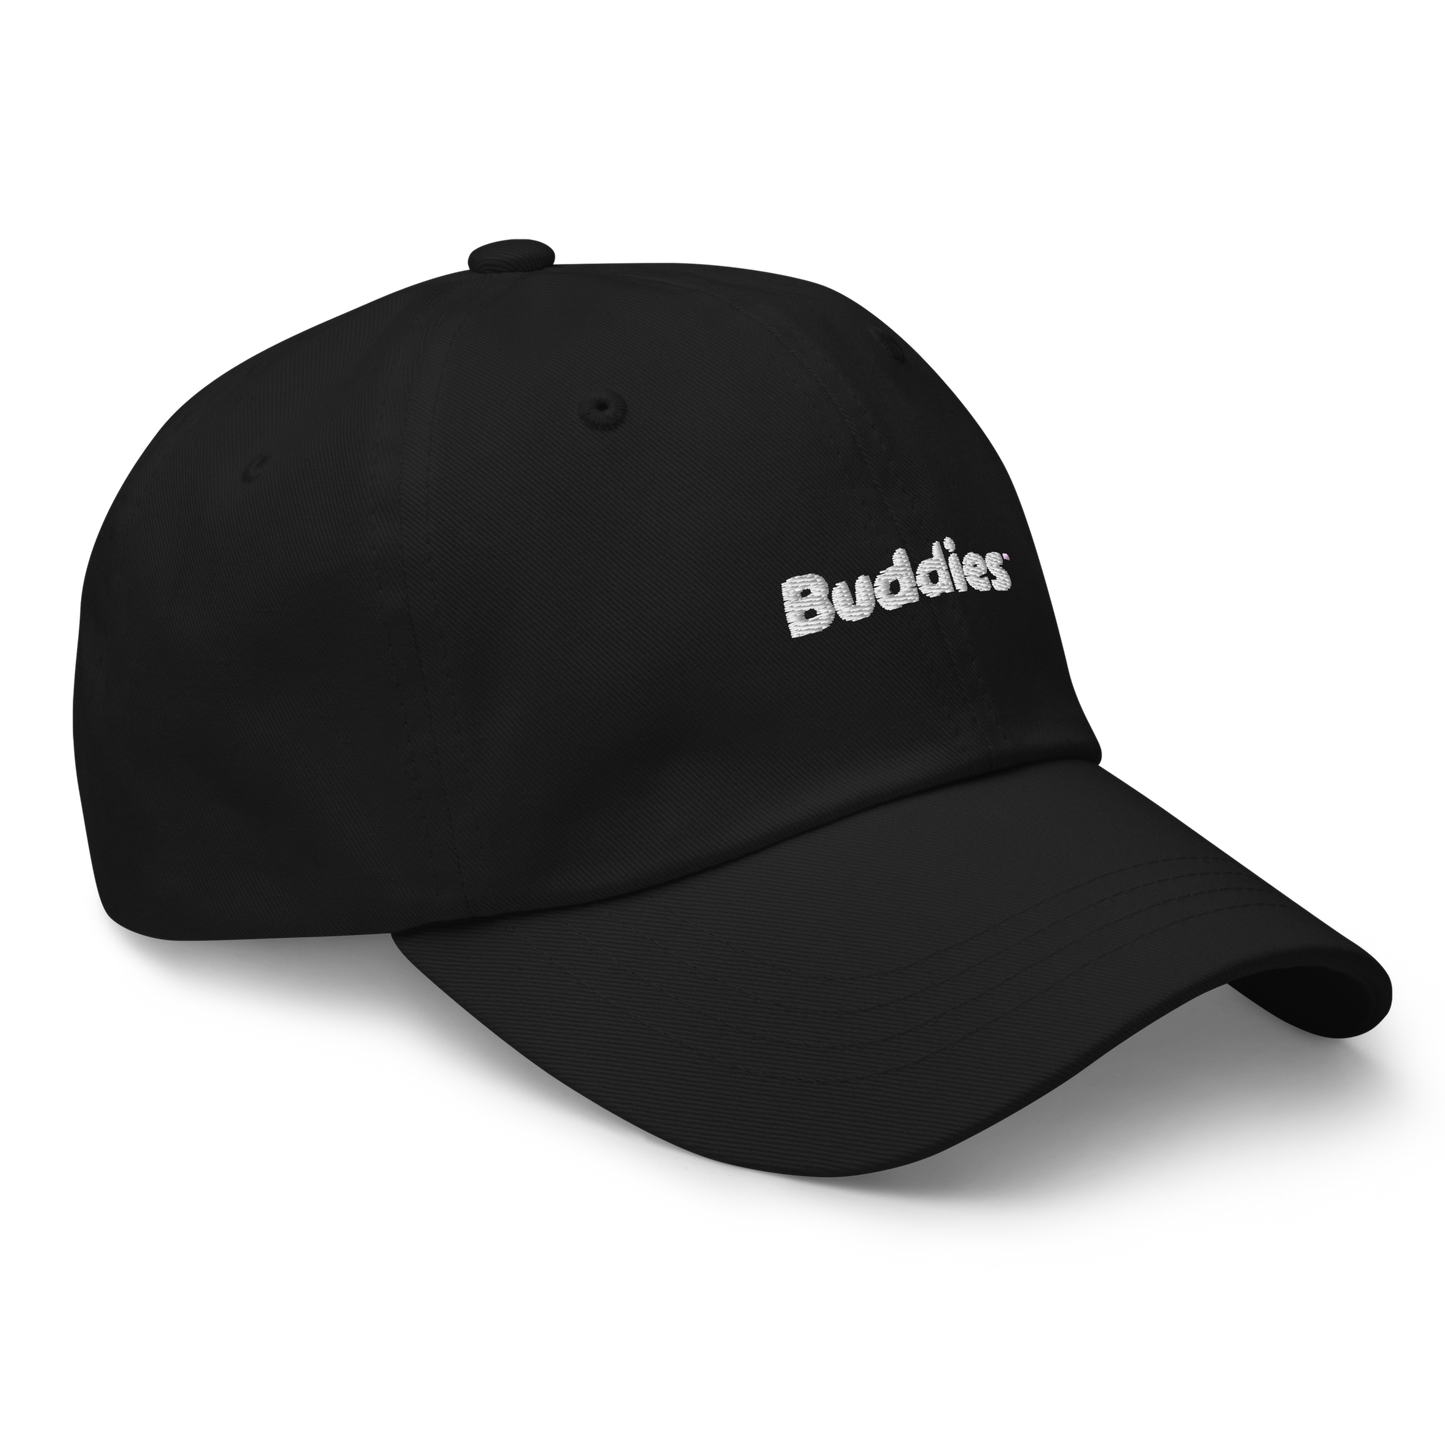 Buddies Dad hat